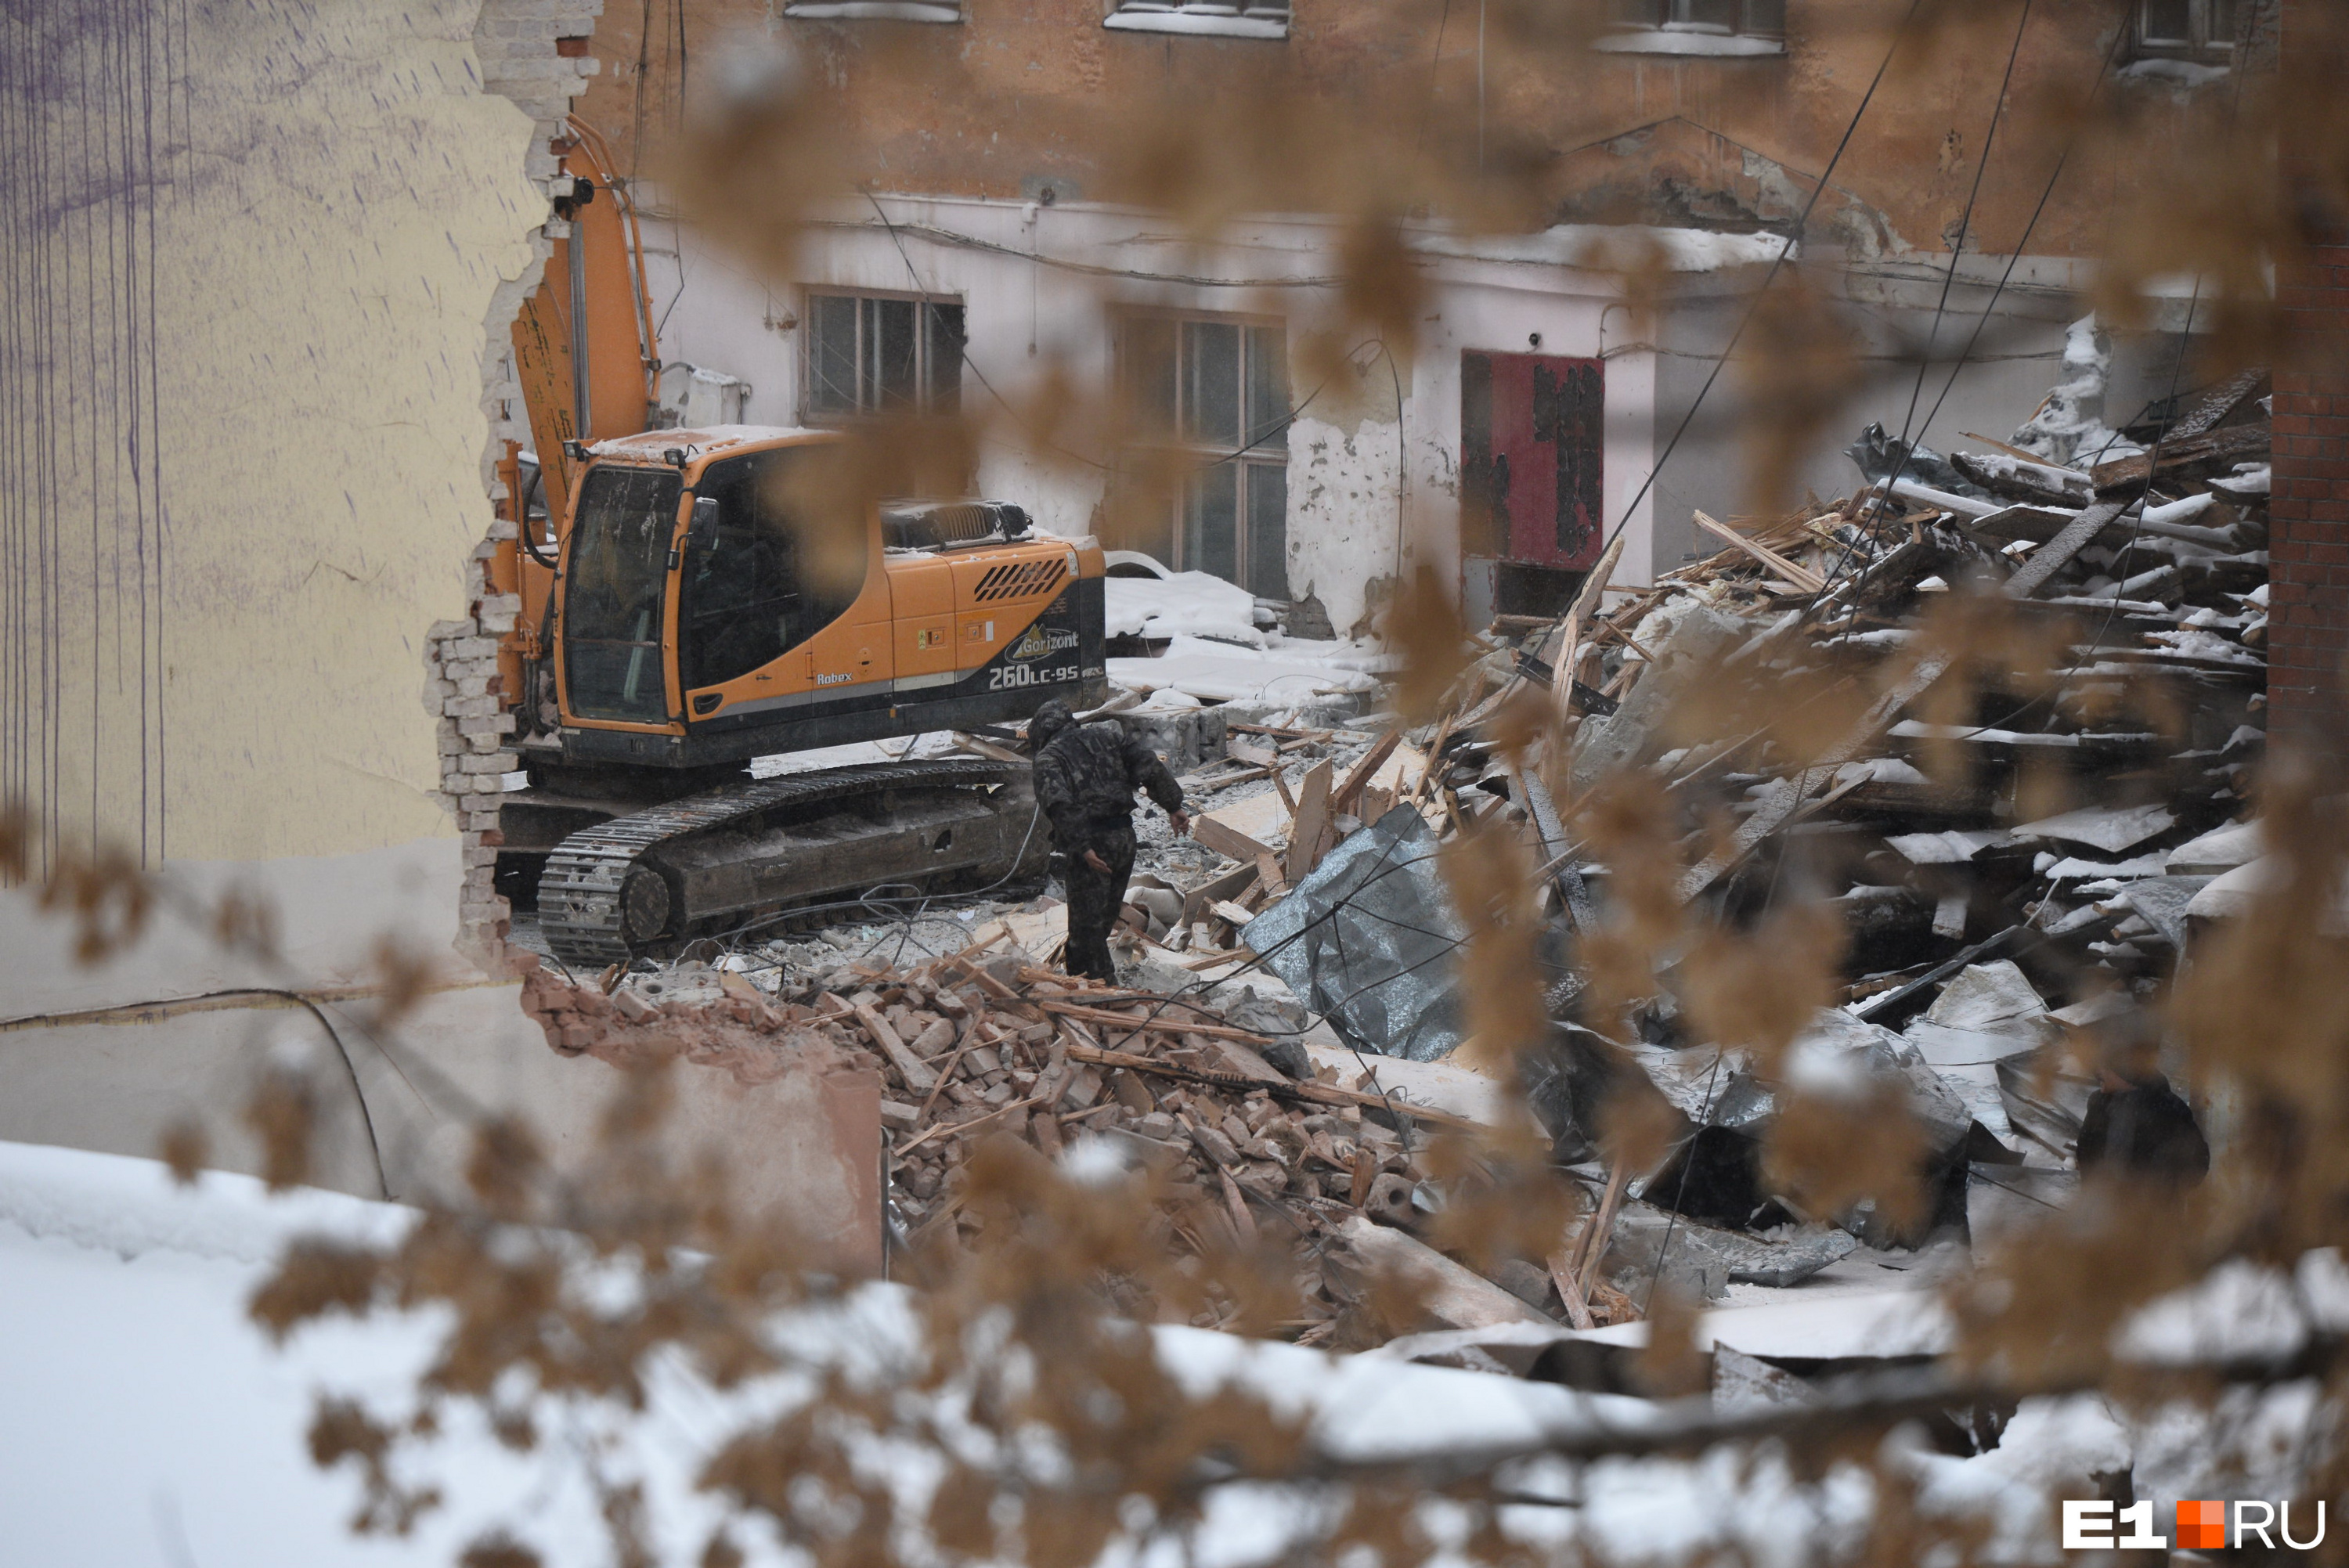 Бульдозер разравнивает груды строительного лома